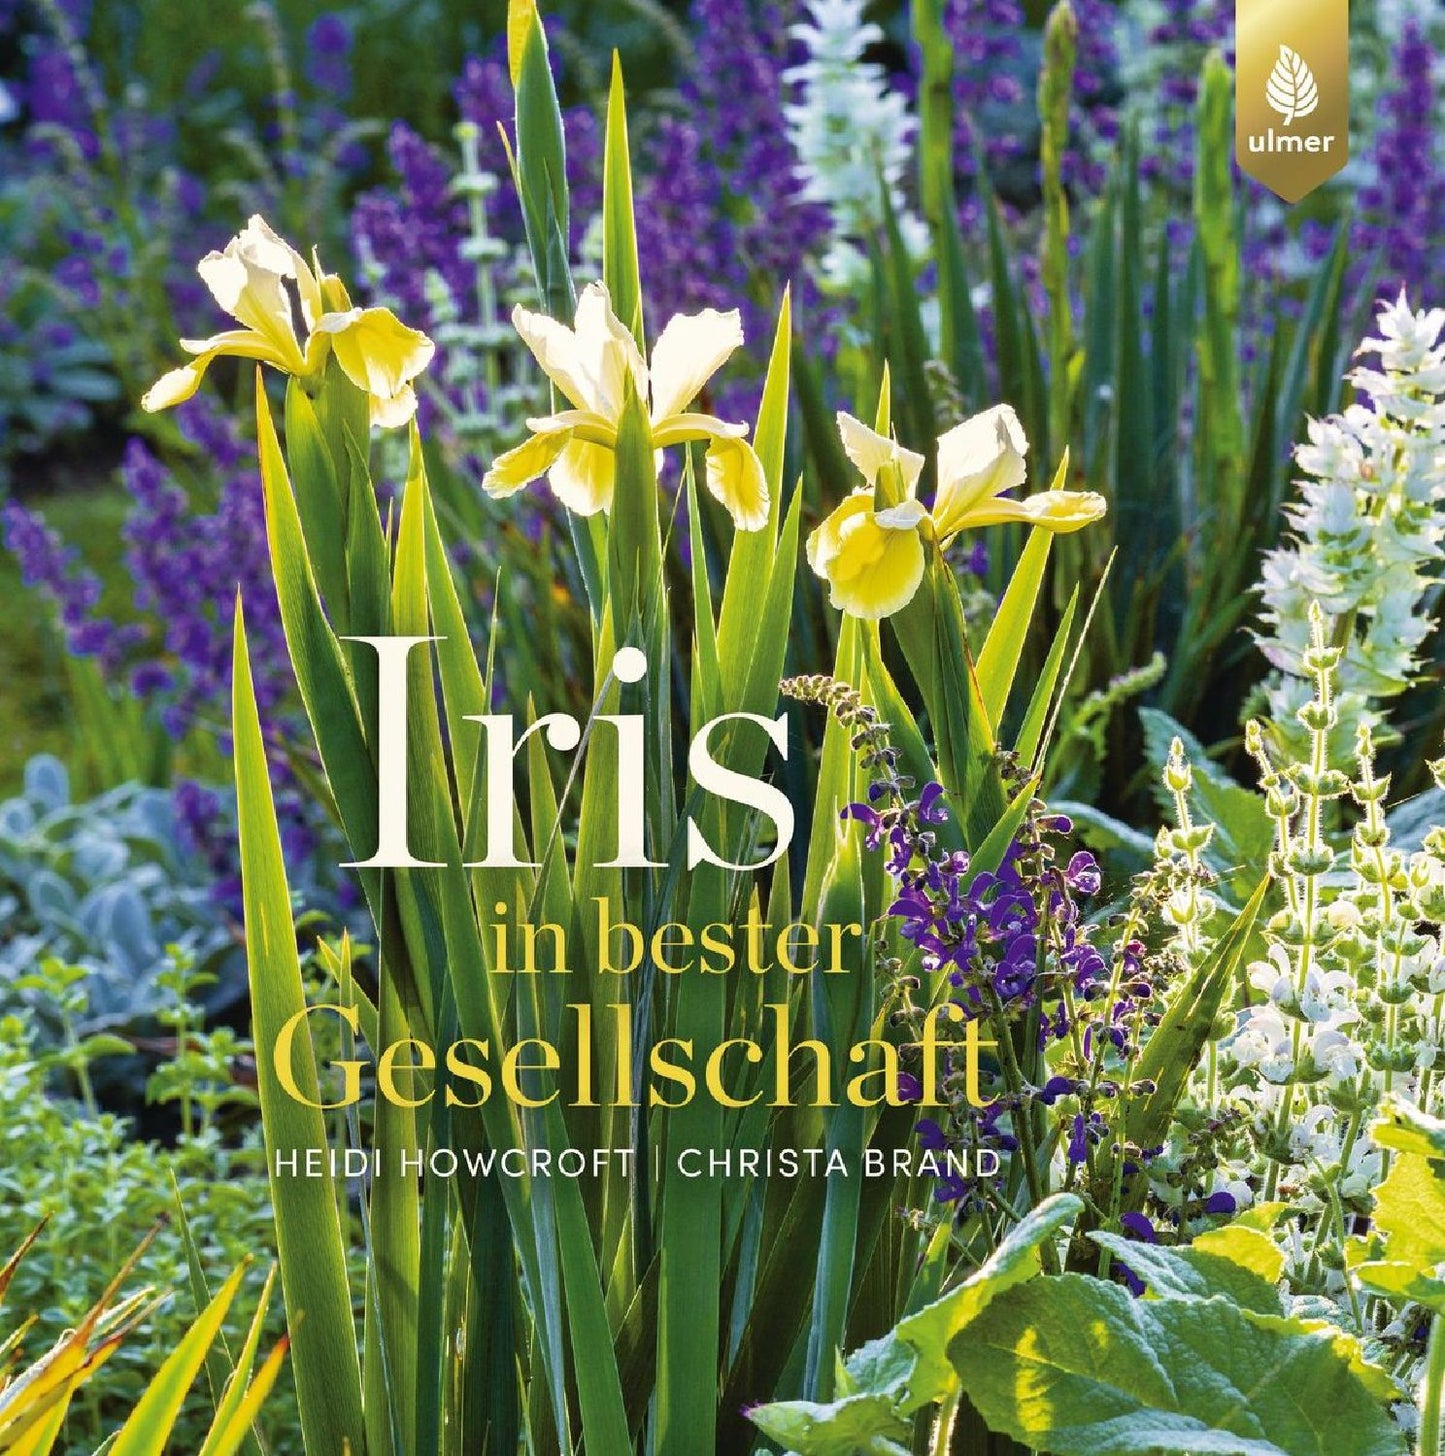 Iris in bester Gesellschaft Heidi Howcroft & Christa Brand